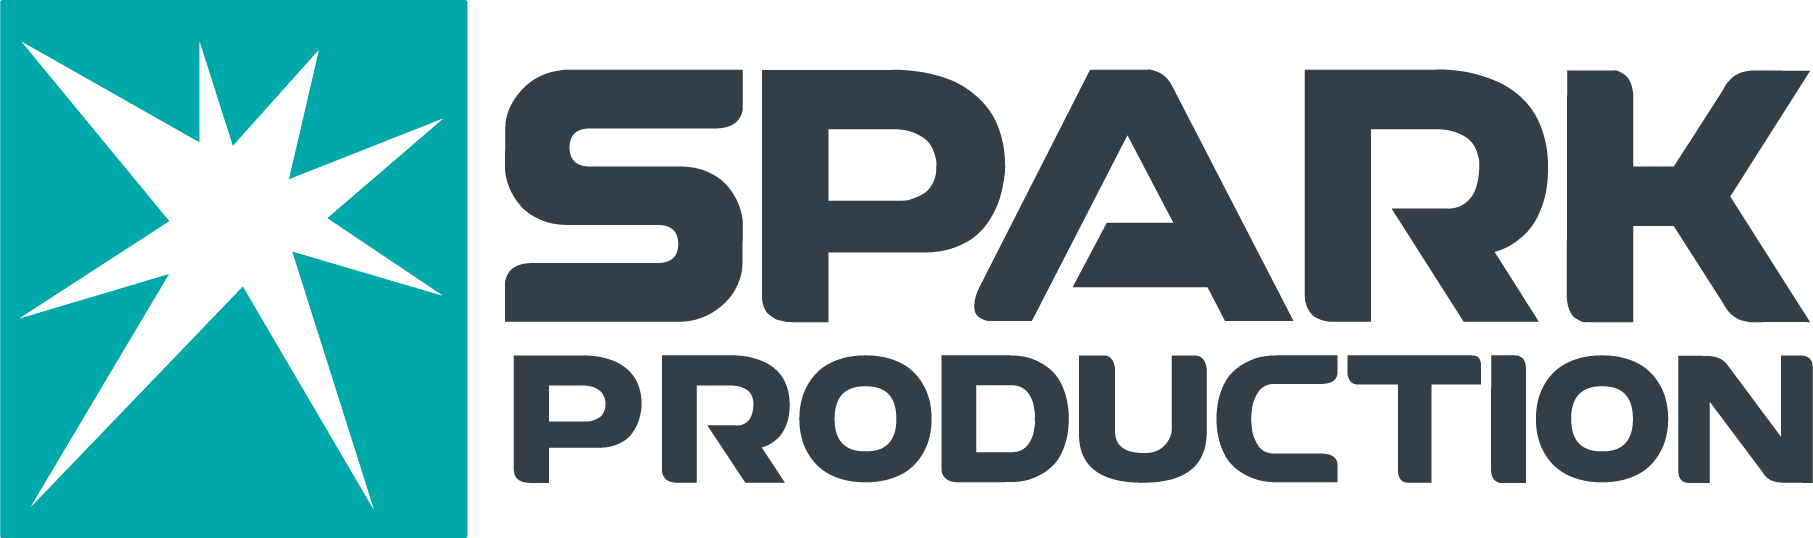 spark production uae logo